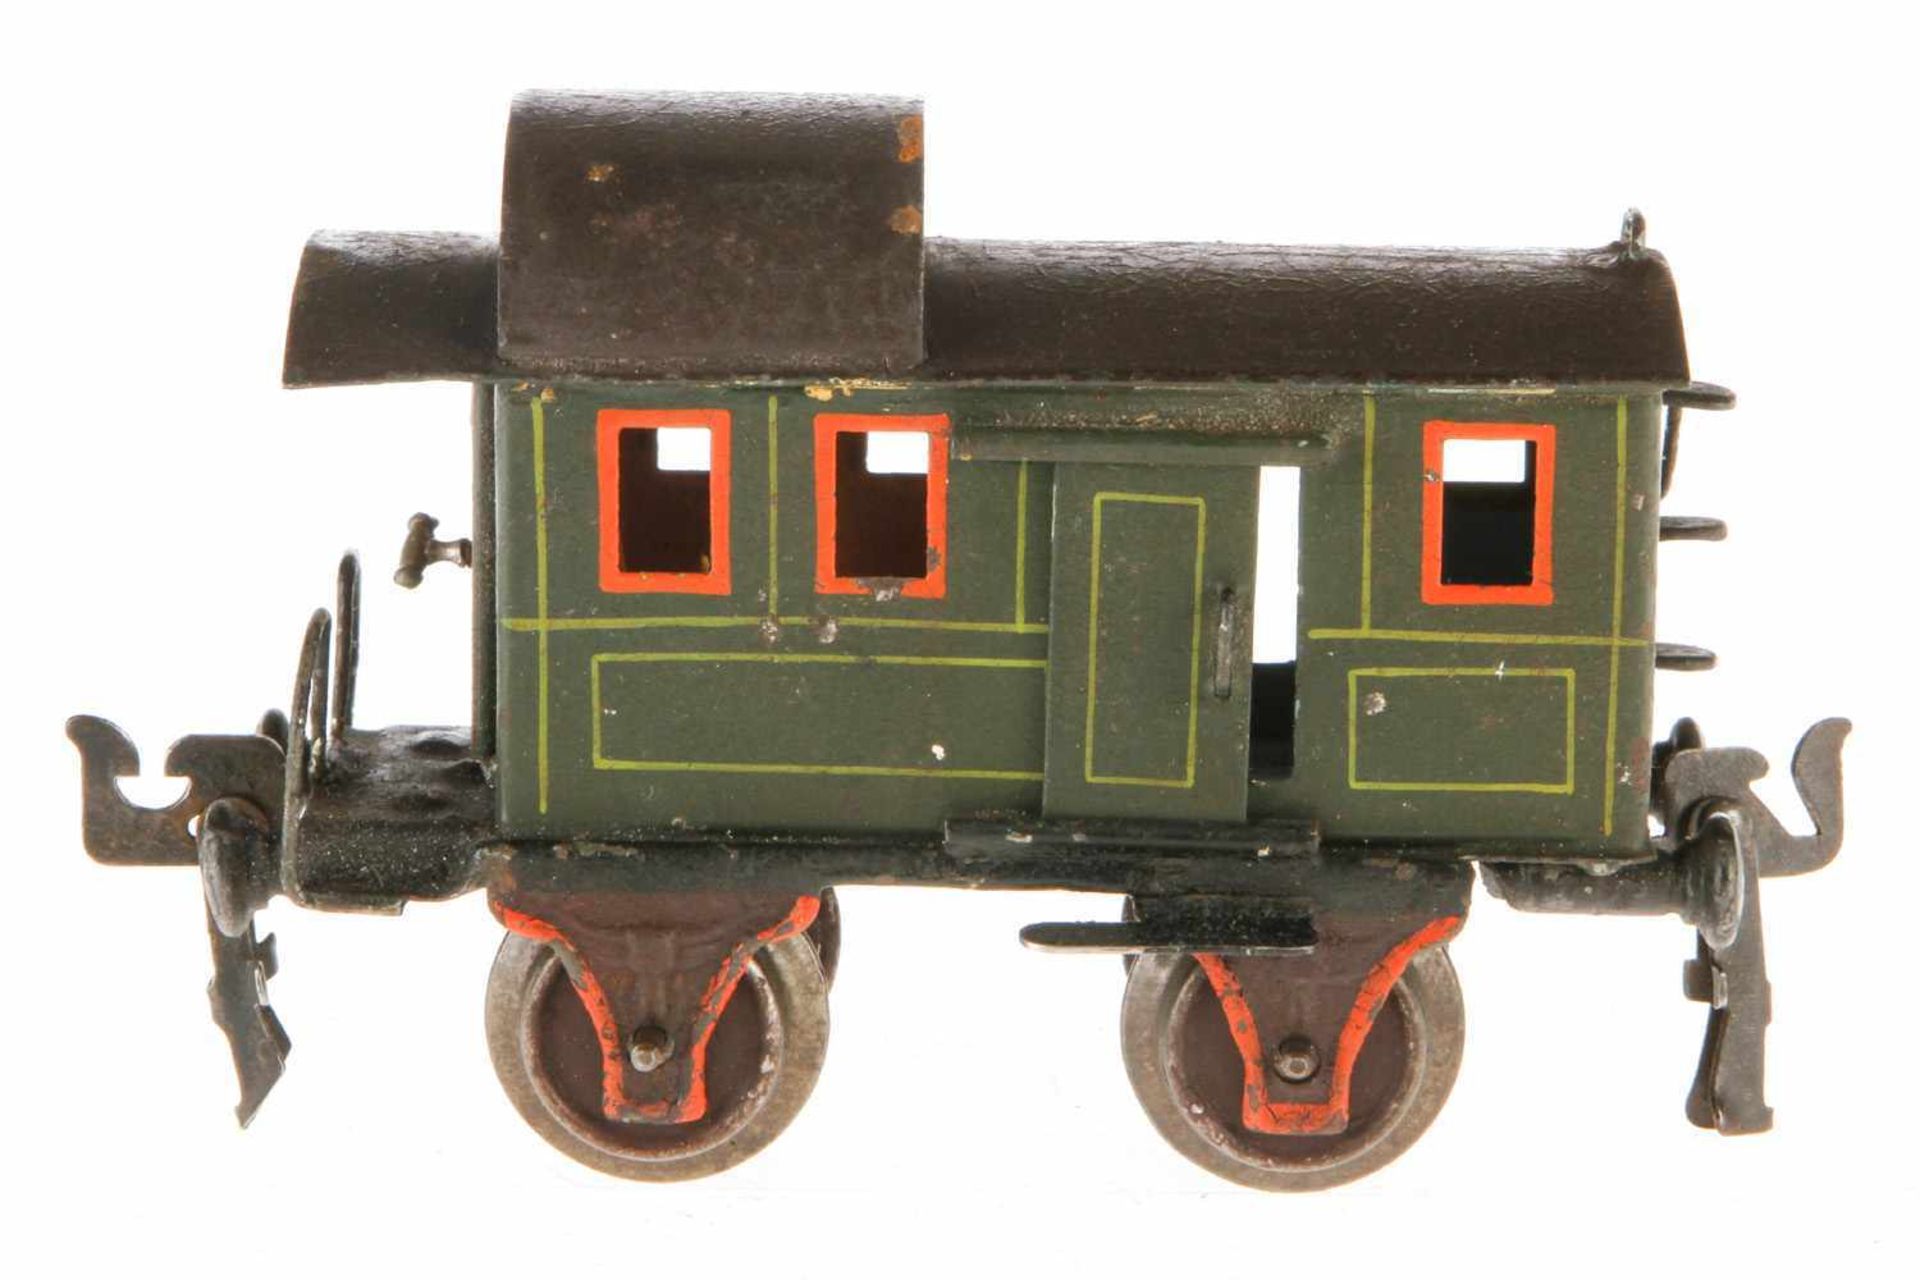 Märklin Gepäckwagen 1836, S 0, uralt, HL, mit Diensteinrichtung, 2 ST und 1 AT, LS und gealterter